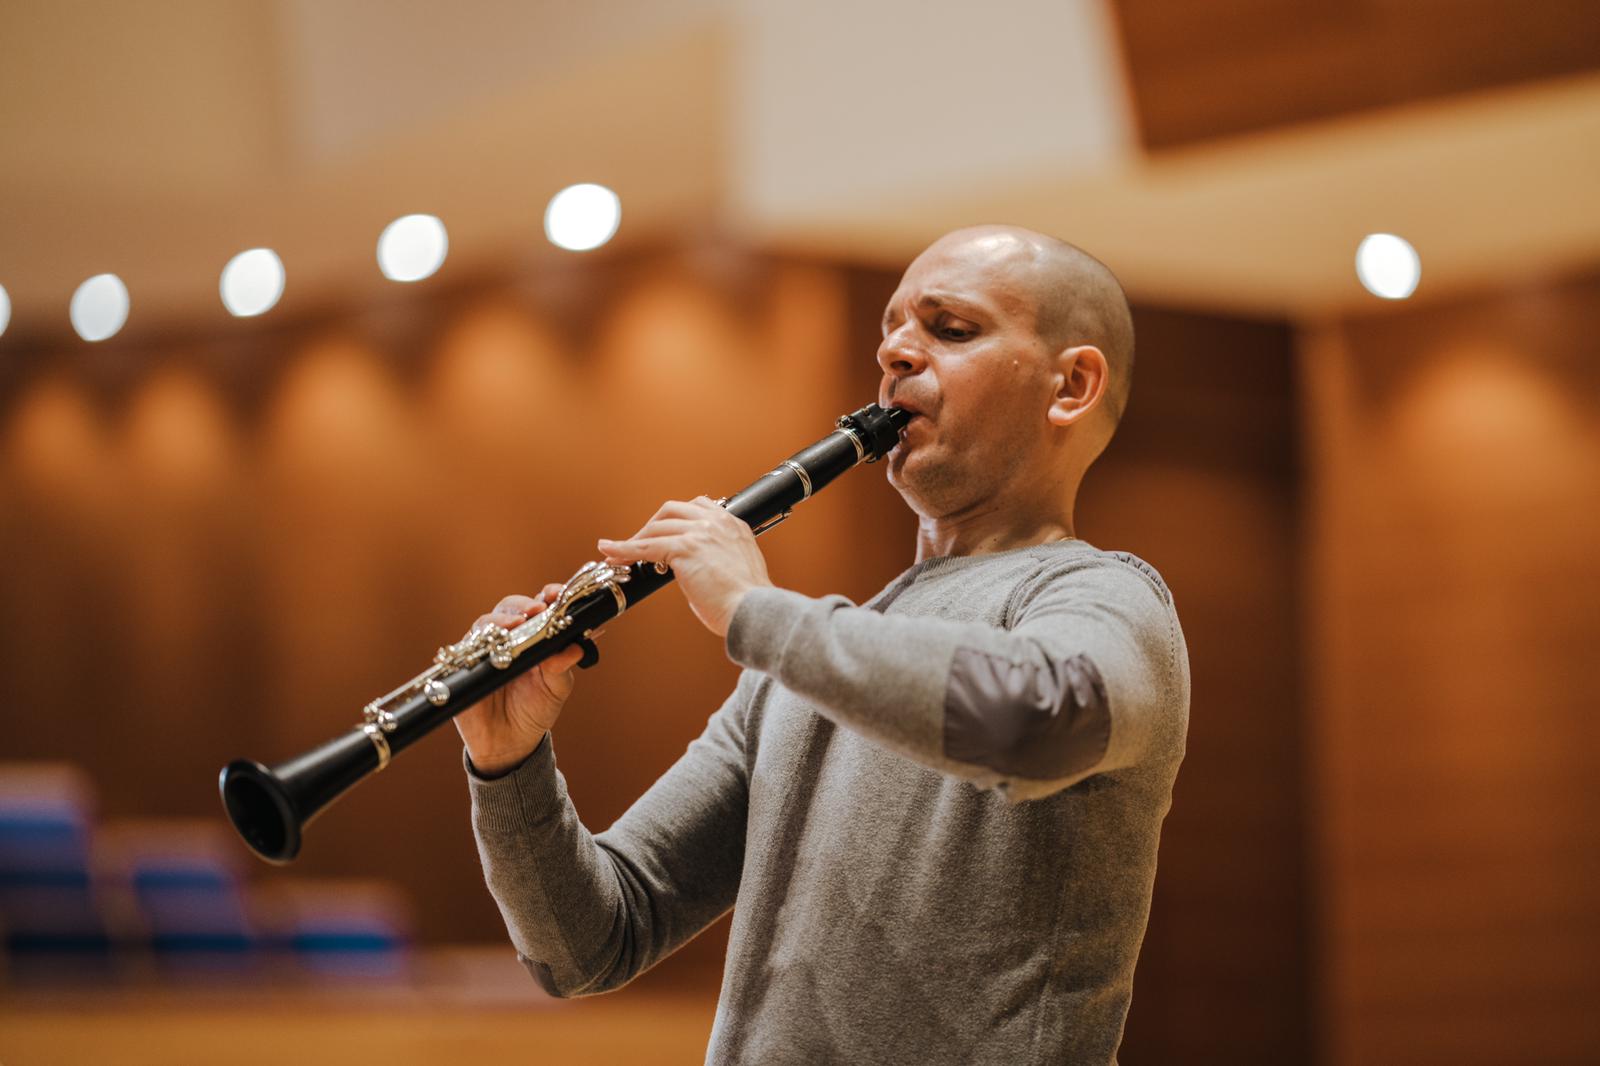 El músico villero, que es uno de los referentes del clarinete en Europa, explora en este trabajo el repertorio francés